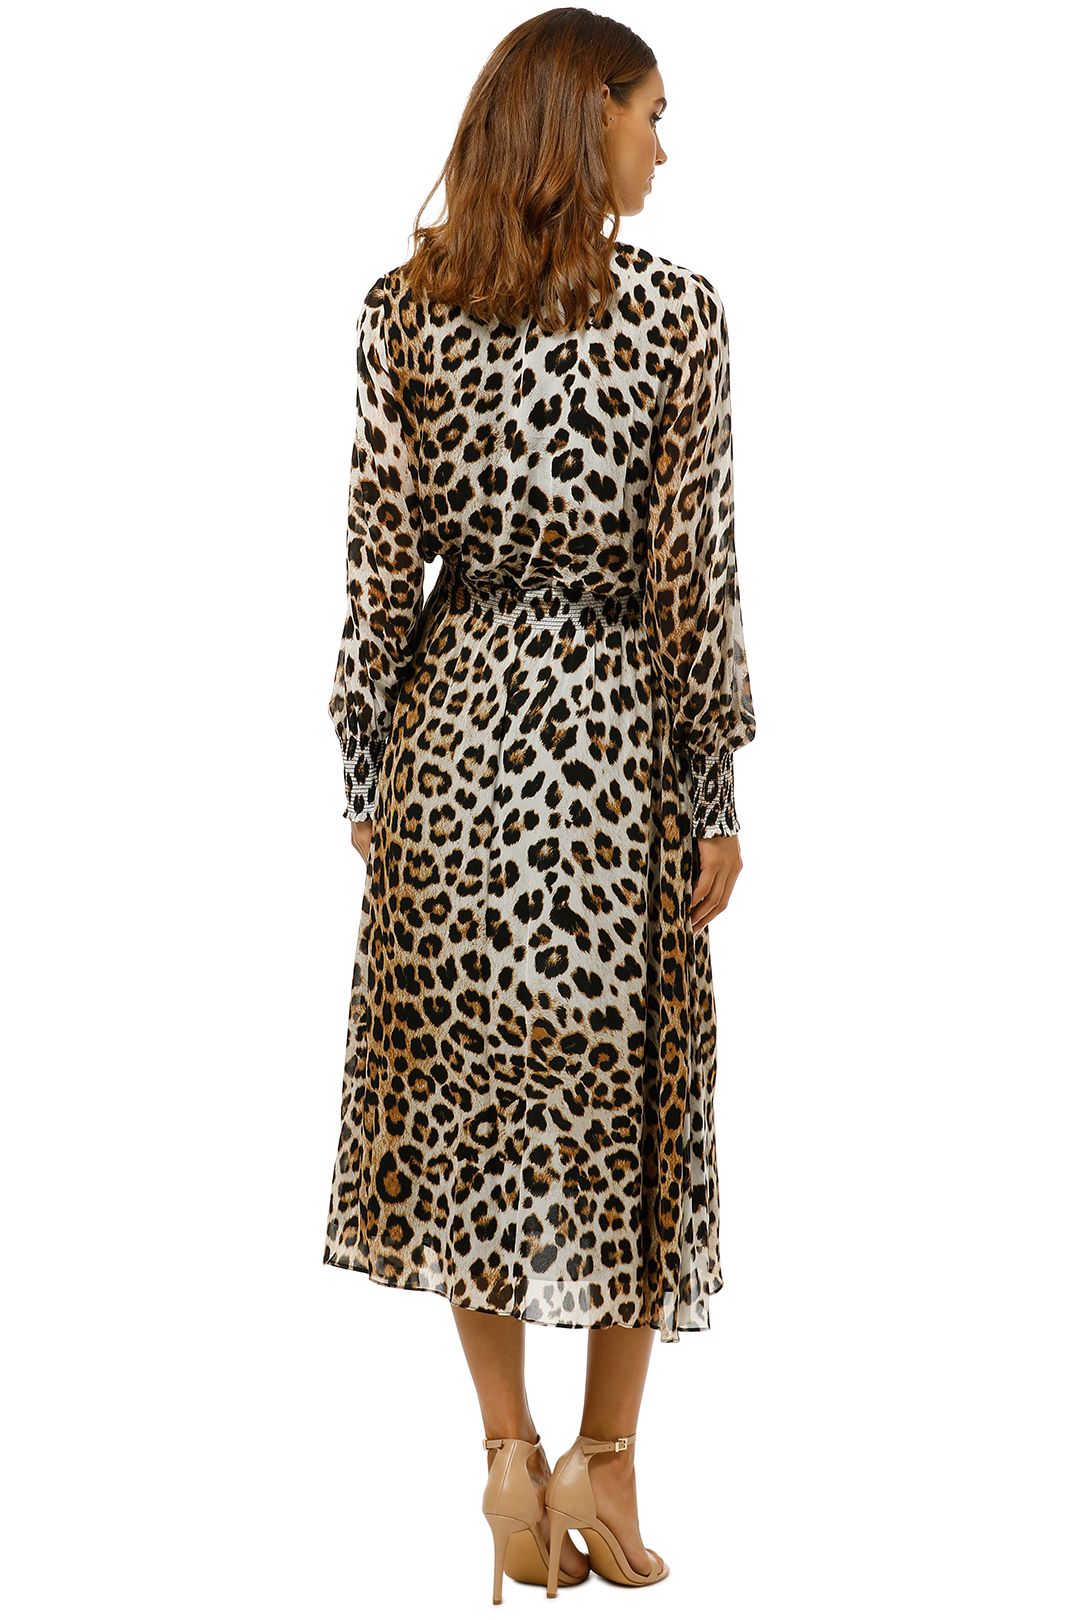 witchery leopard dress